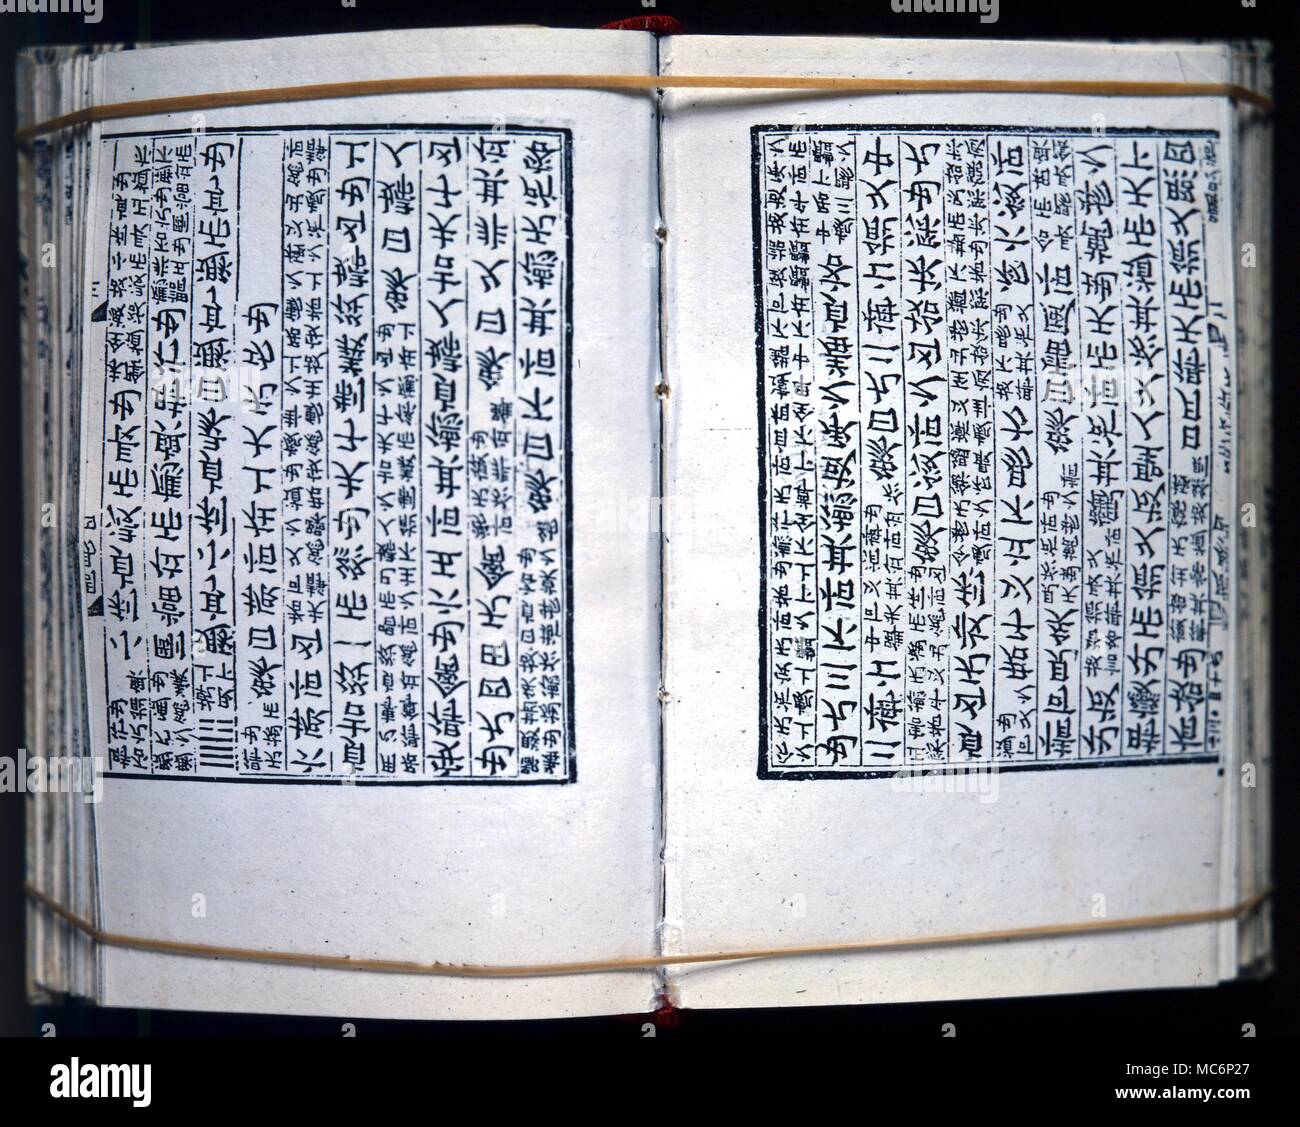 La divination, livre des mutations ouvrir la page d'un 10e siècle de l'édition chinoise blockbook texte divinatoire du "I Ching" ou livre des mutations. Banque D'Images